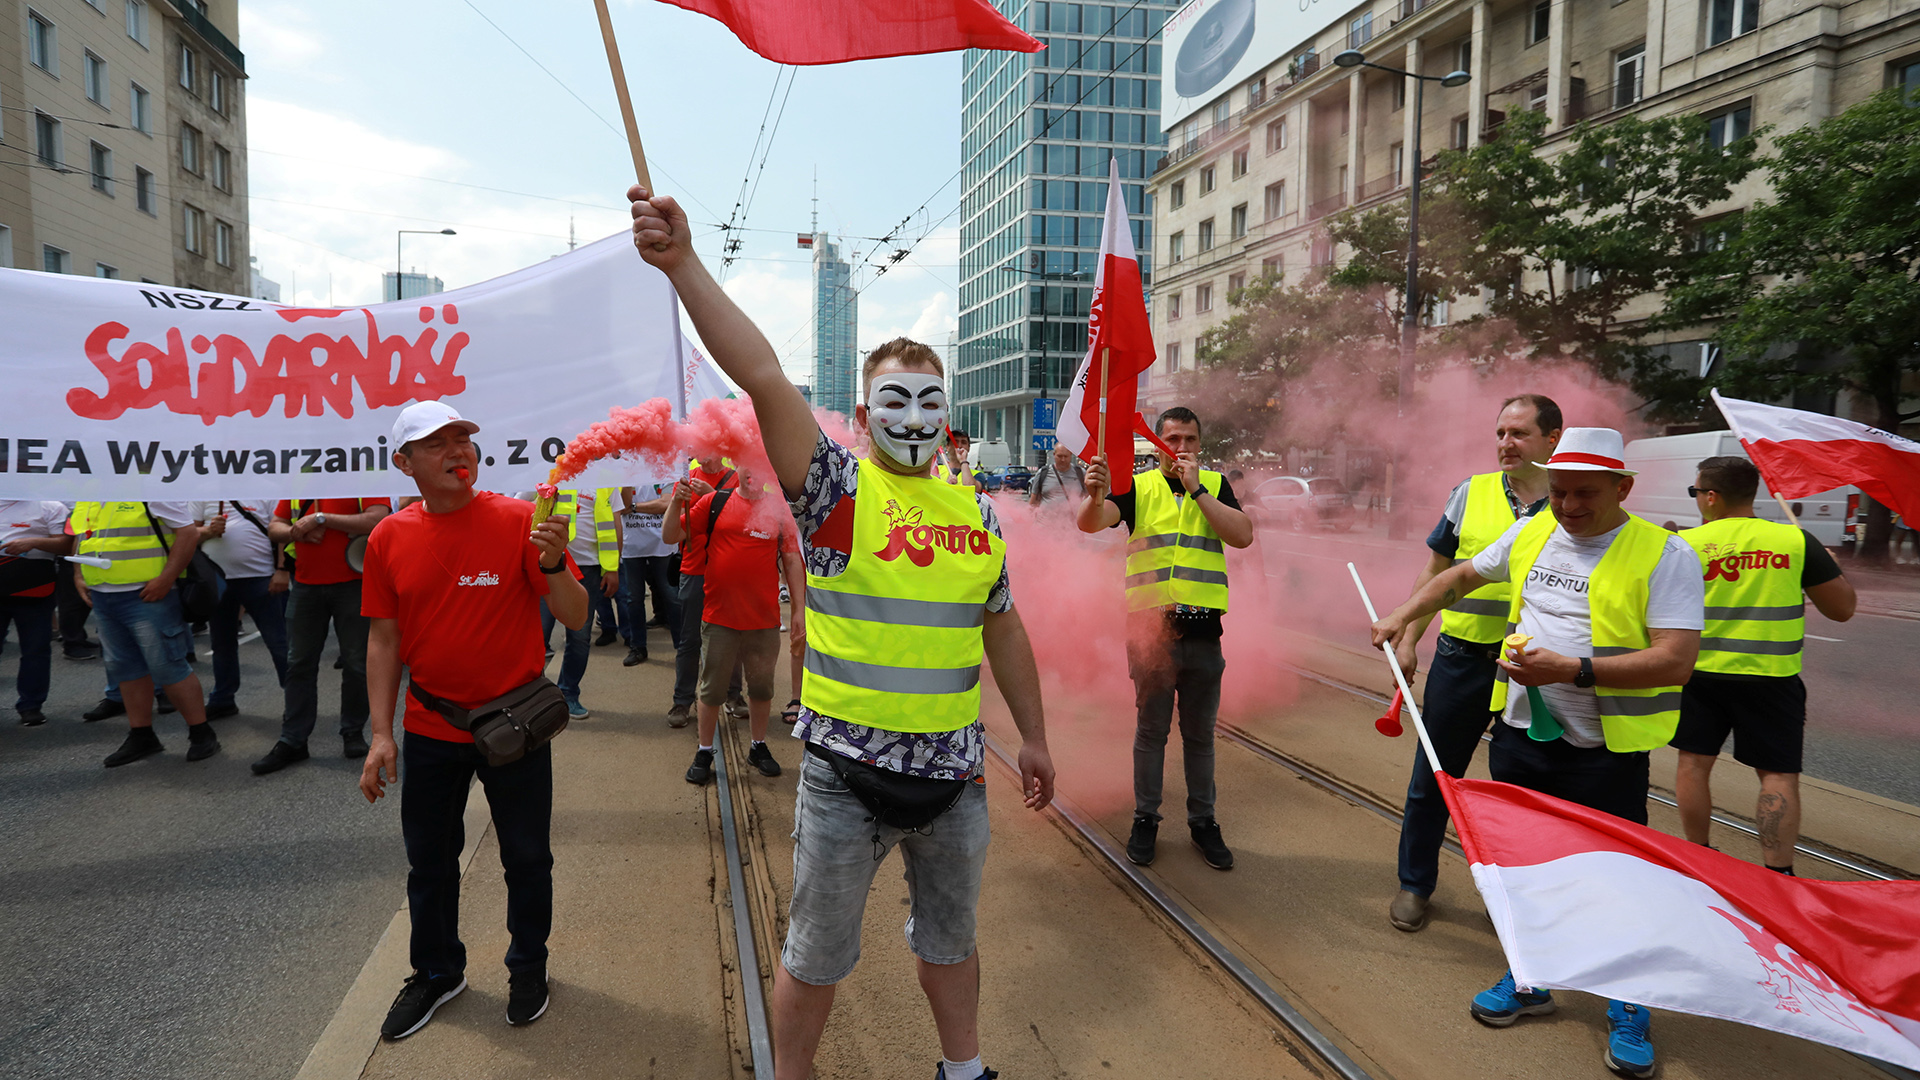 Arbeiter des Kohle- und Energiesektors protestieren gegen eine Anordnung zur Stilllegung des Braunkohletagebaus Turów. | Agencja Gazeta via REUTERS